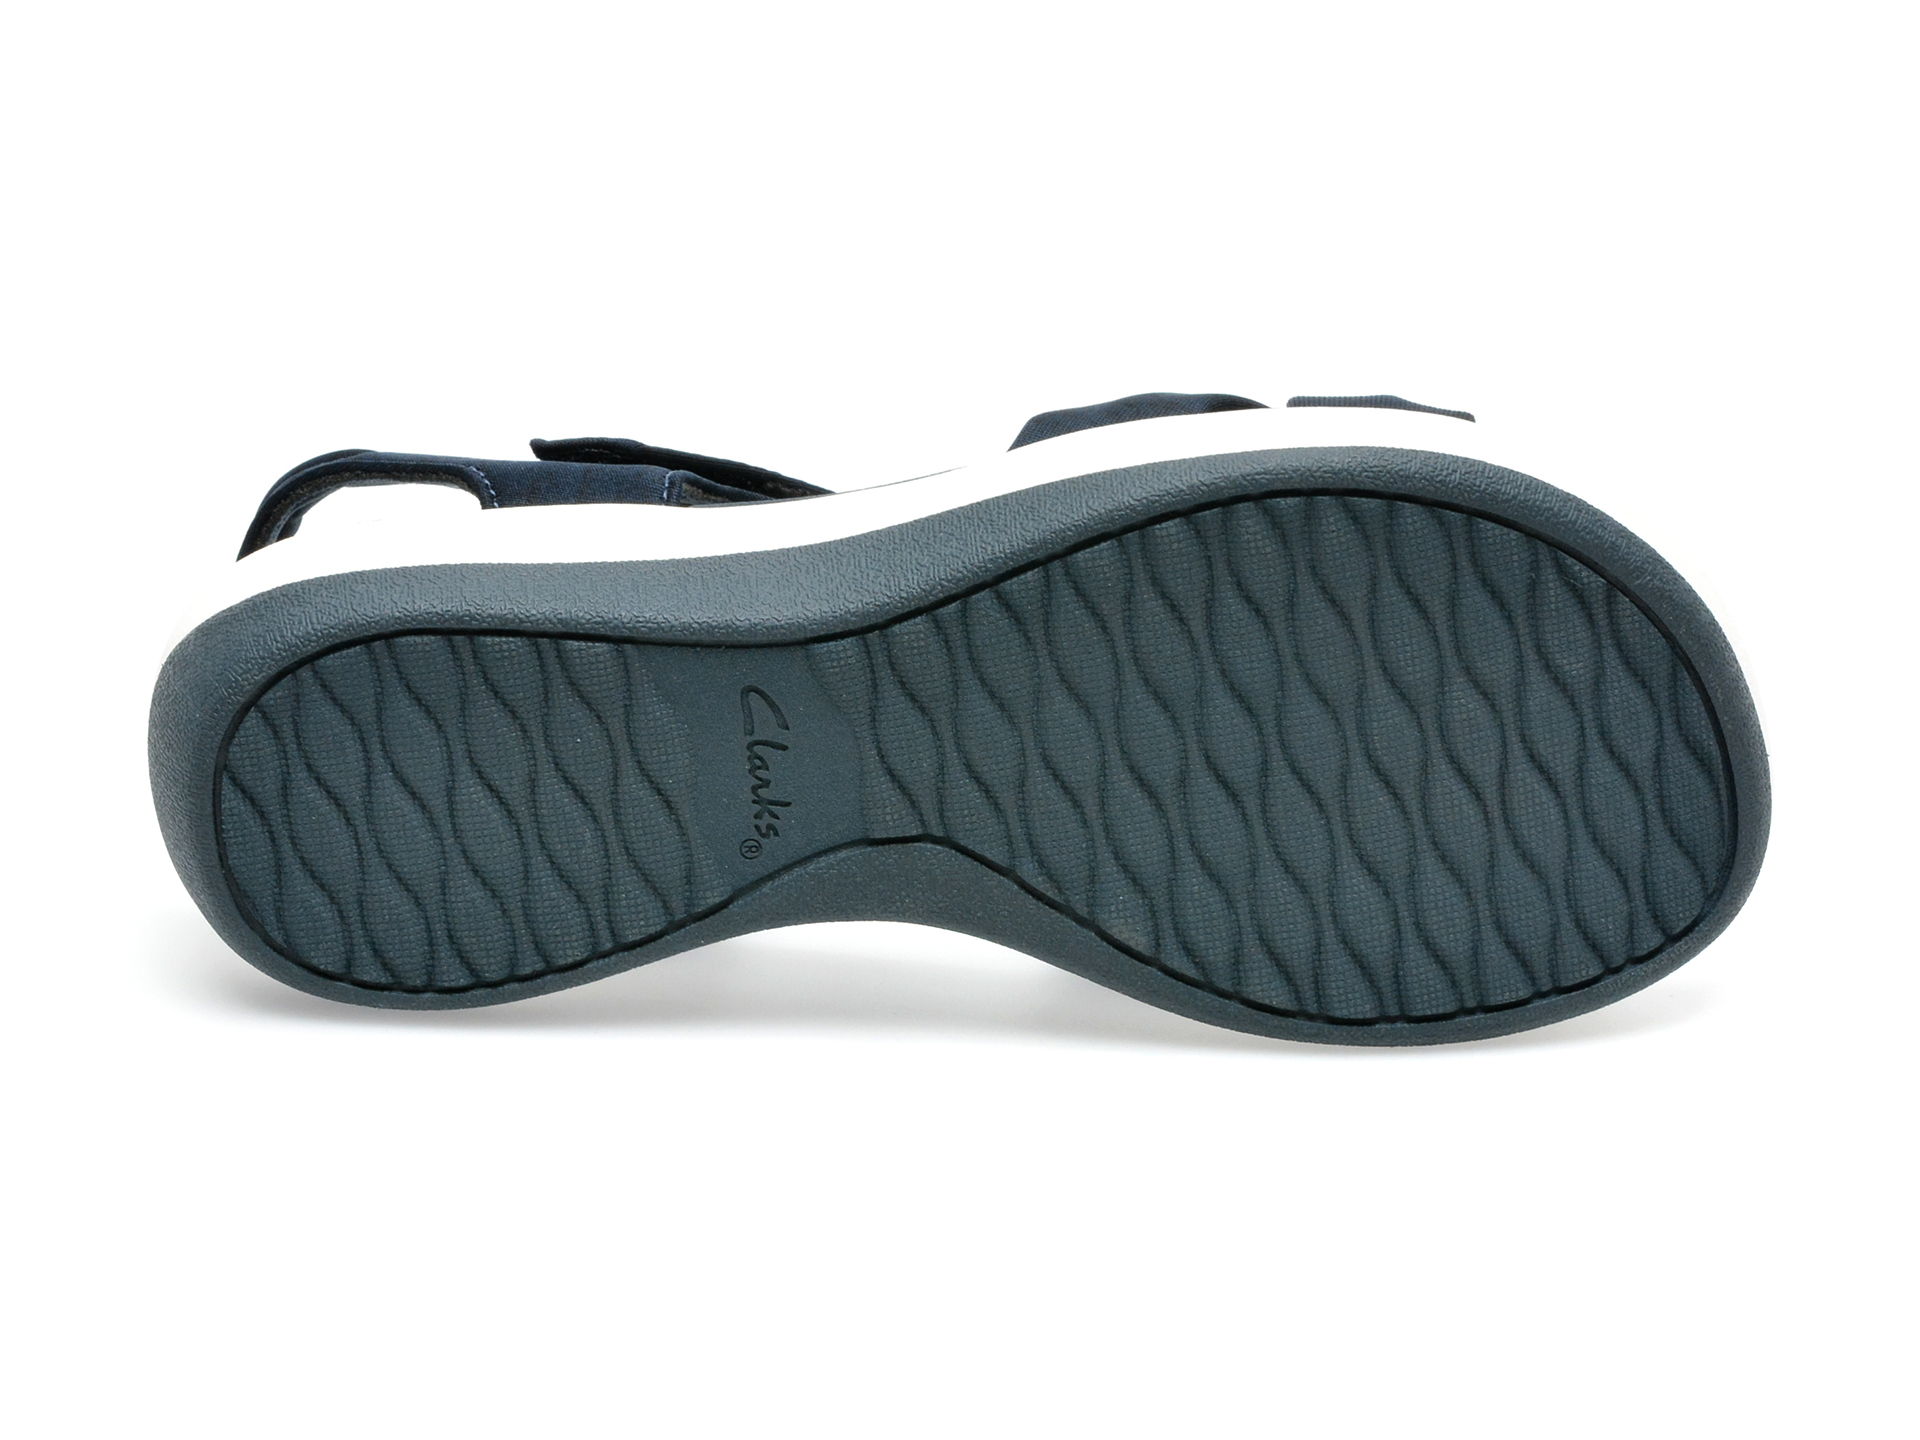 Poze Sandale CLARKS bleumarin, ARLA SHORE 0912, din material textil otter.ro